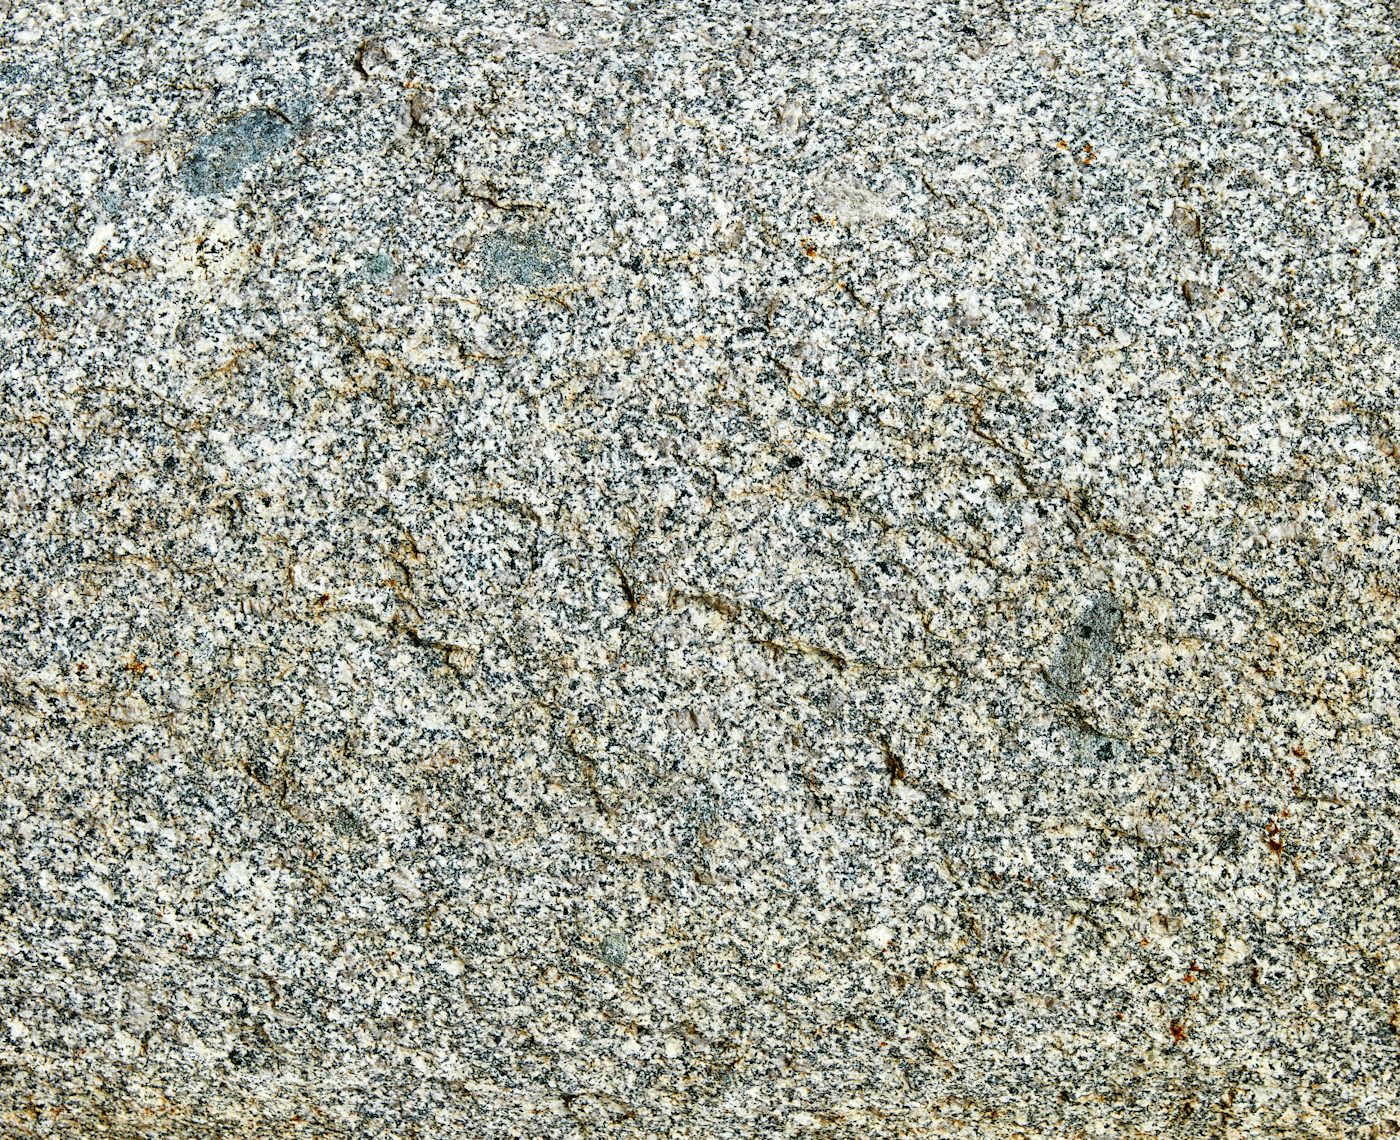 Natural Stone Texture: Stock Photos